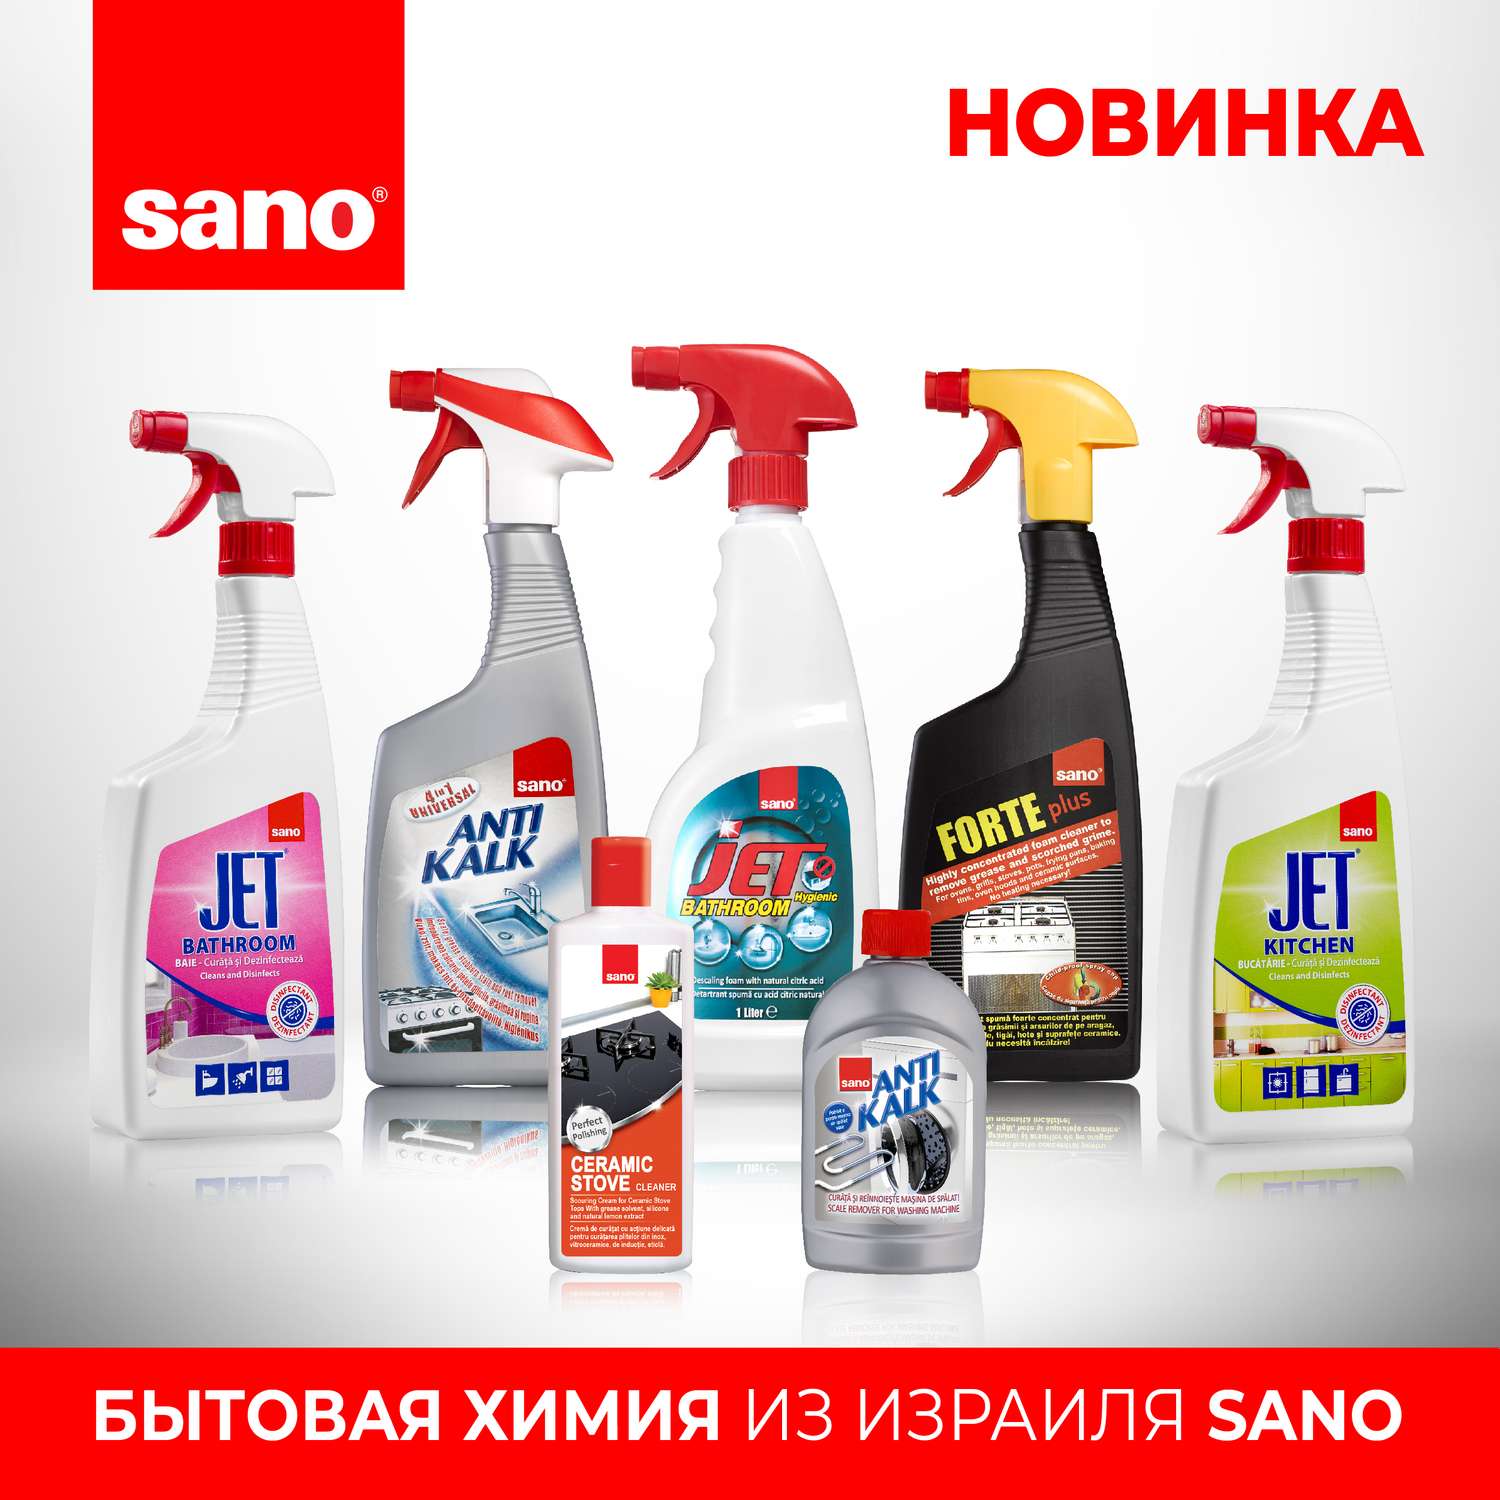 Чистящее средство для кухни Sano Jet многофункциональное антибактериальное 750 мл - фото 4